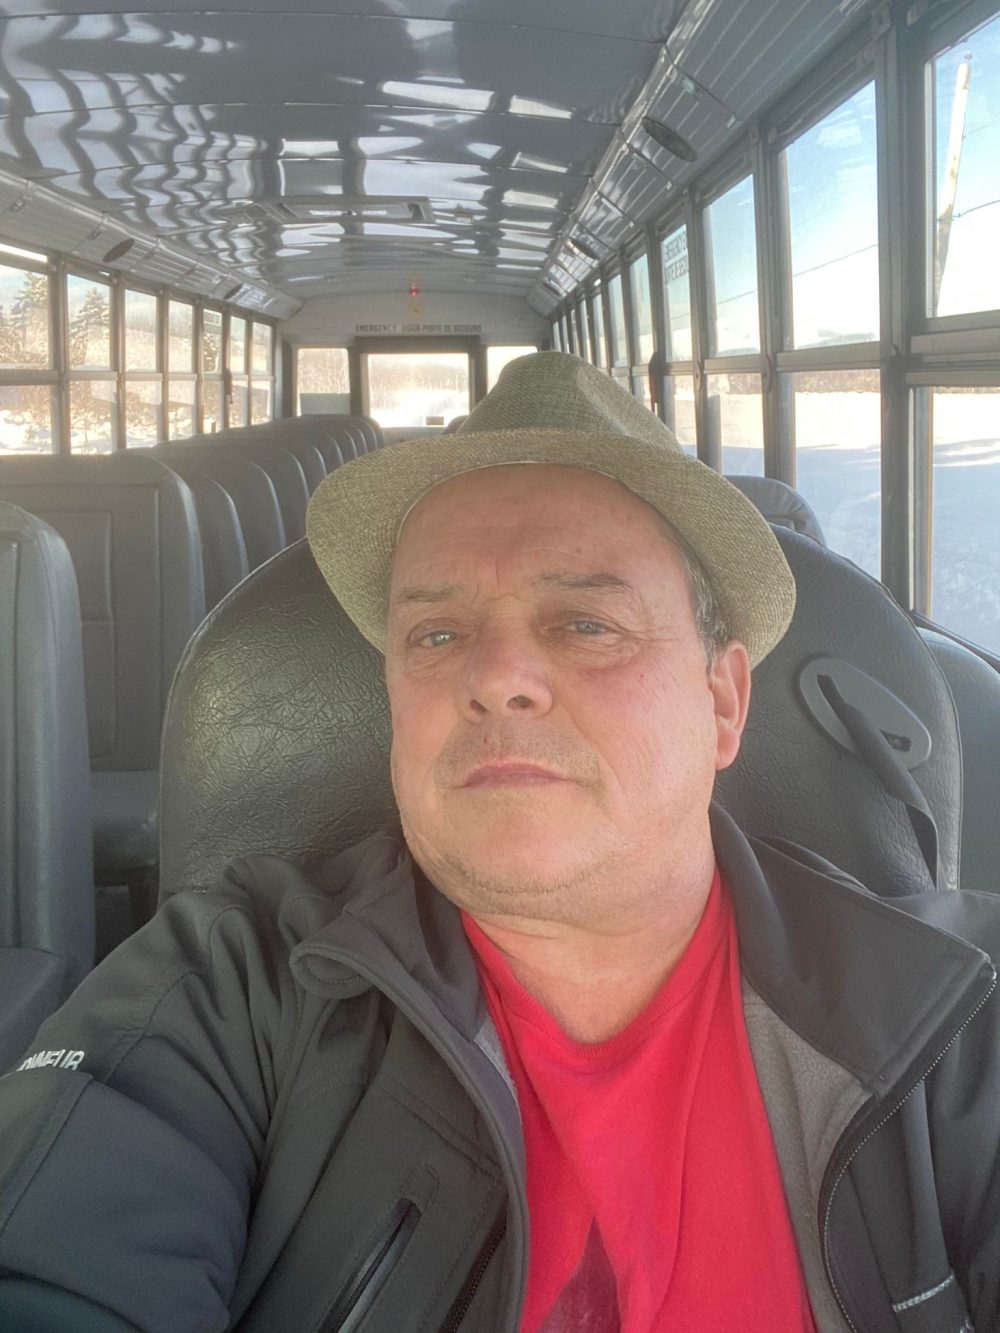 Chauffeur d'autobus au volant de celui-ci. Il porte un chapeau, une chemise rouge et une veste noire